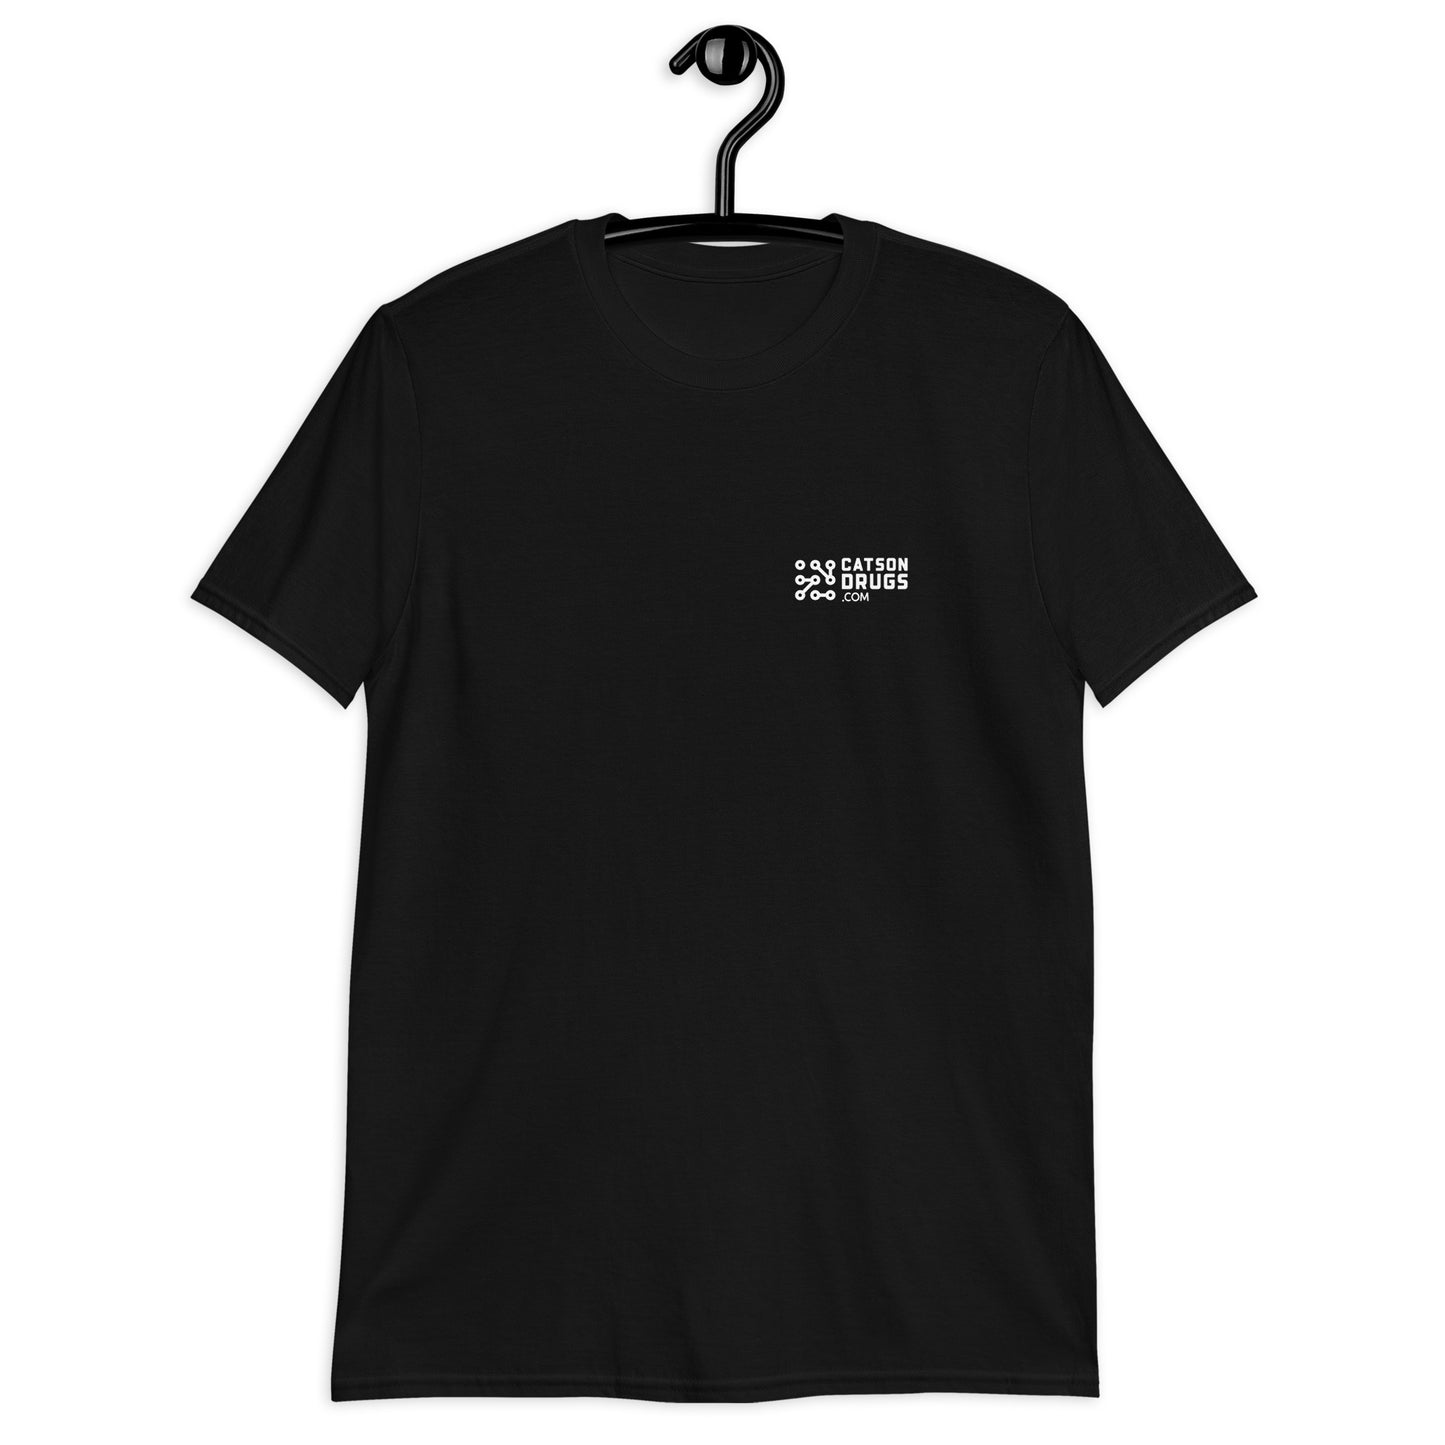 Sunset Dj Set - Camiseta unisex